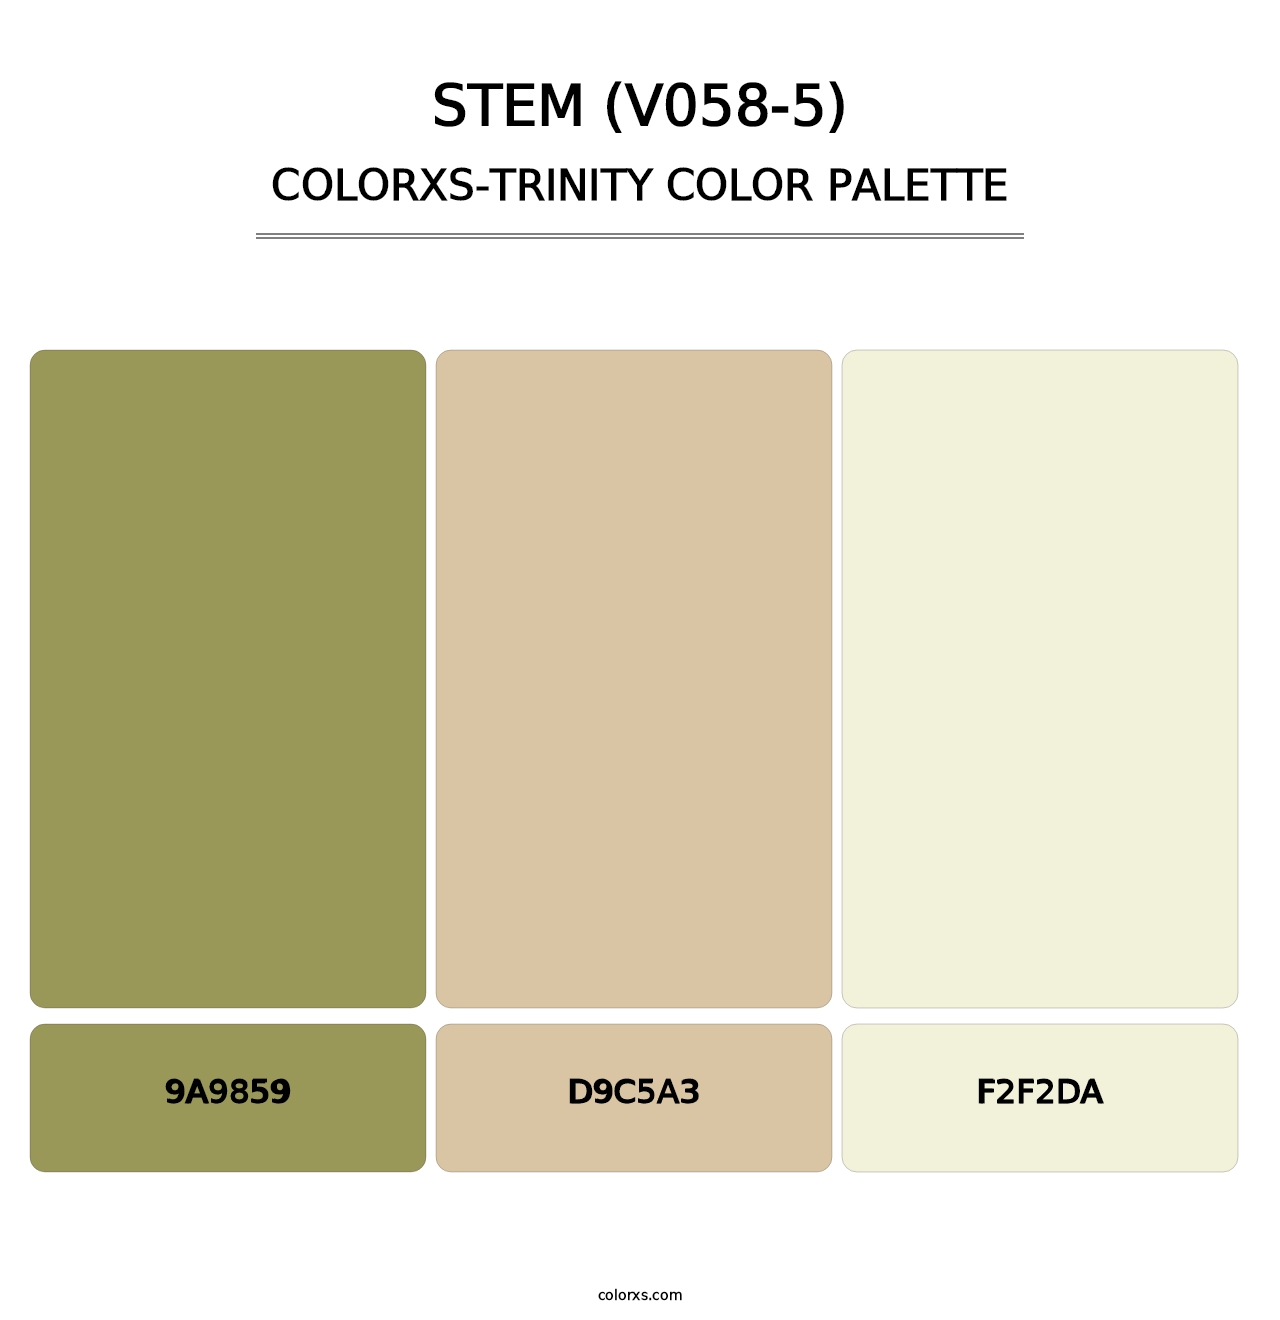 Stem (V058-5) - Colorxs Trinity Palette